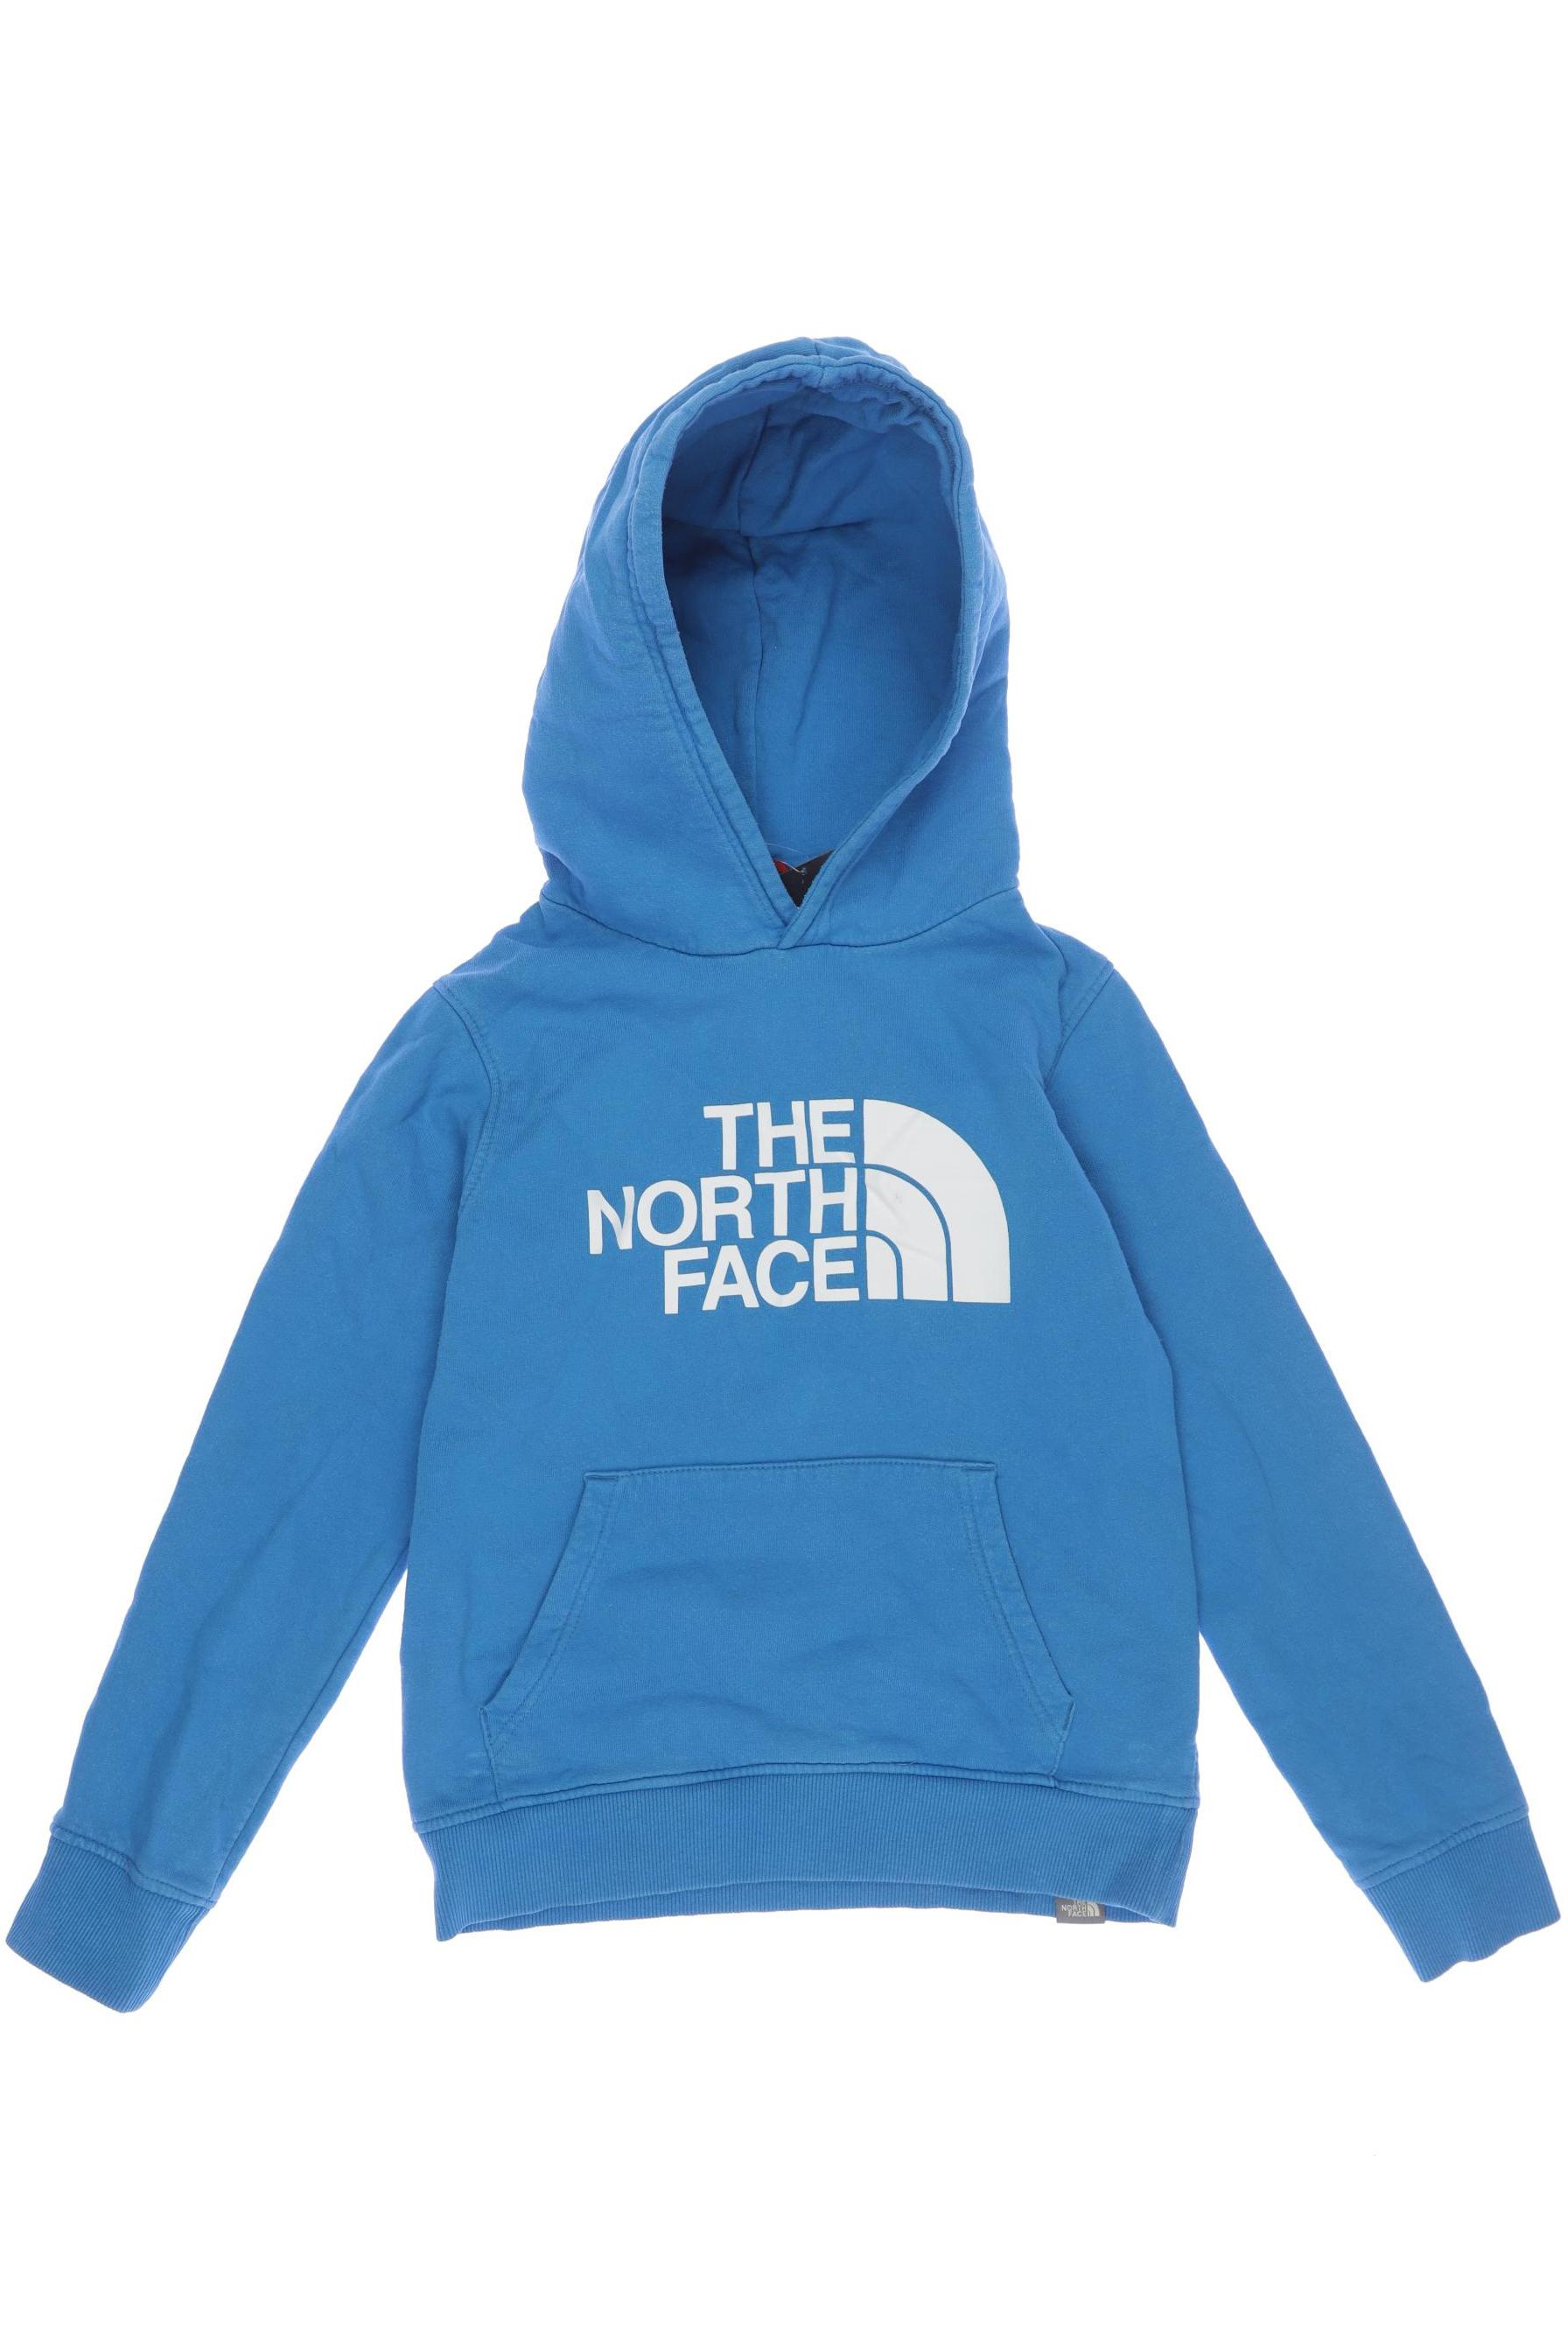 The North Face Herren Hoodies & Sweater, blau, Gr. 158 von The North Face